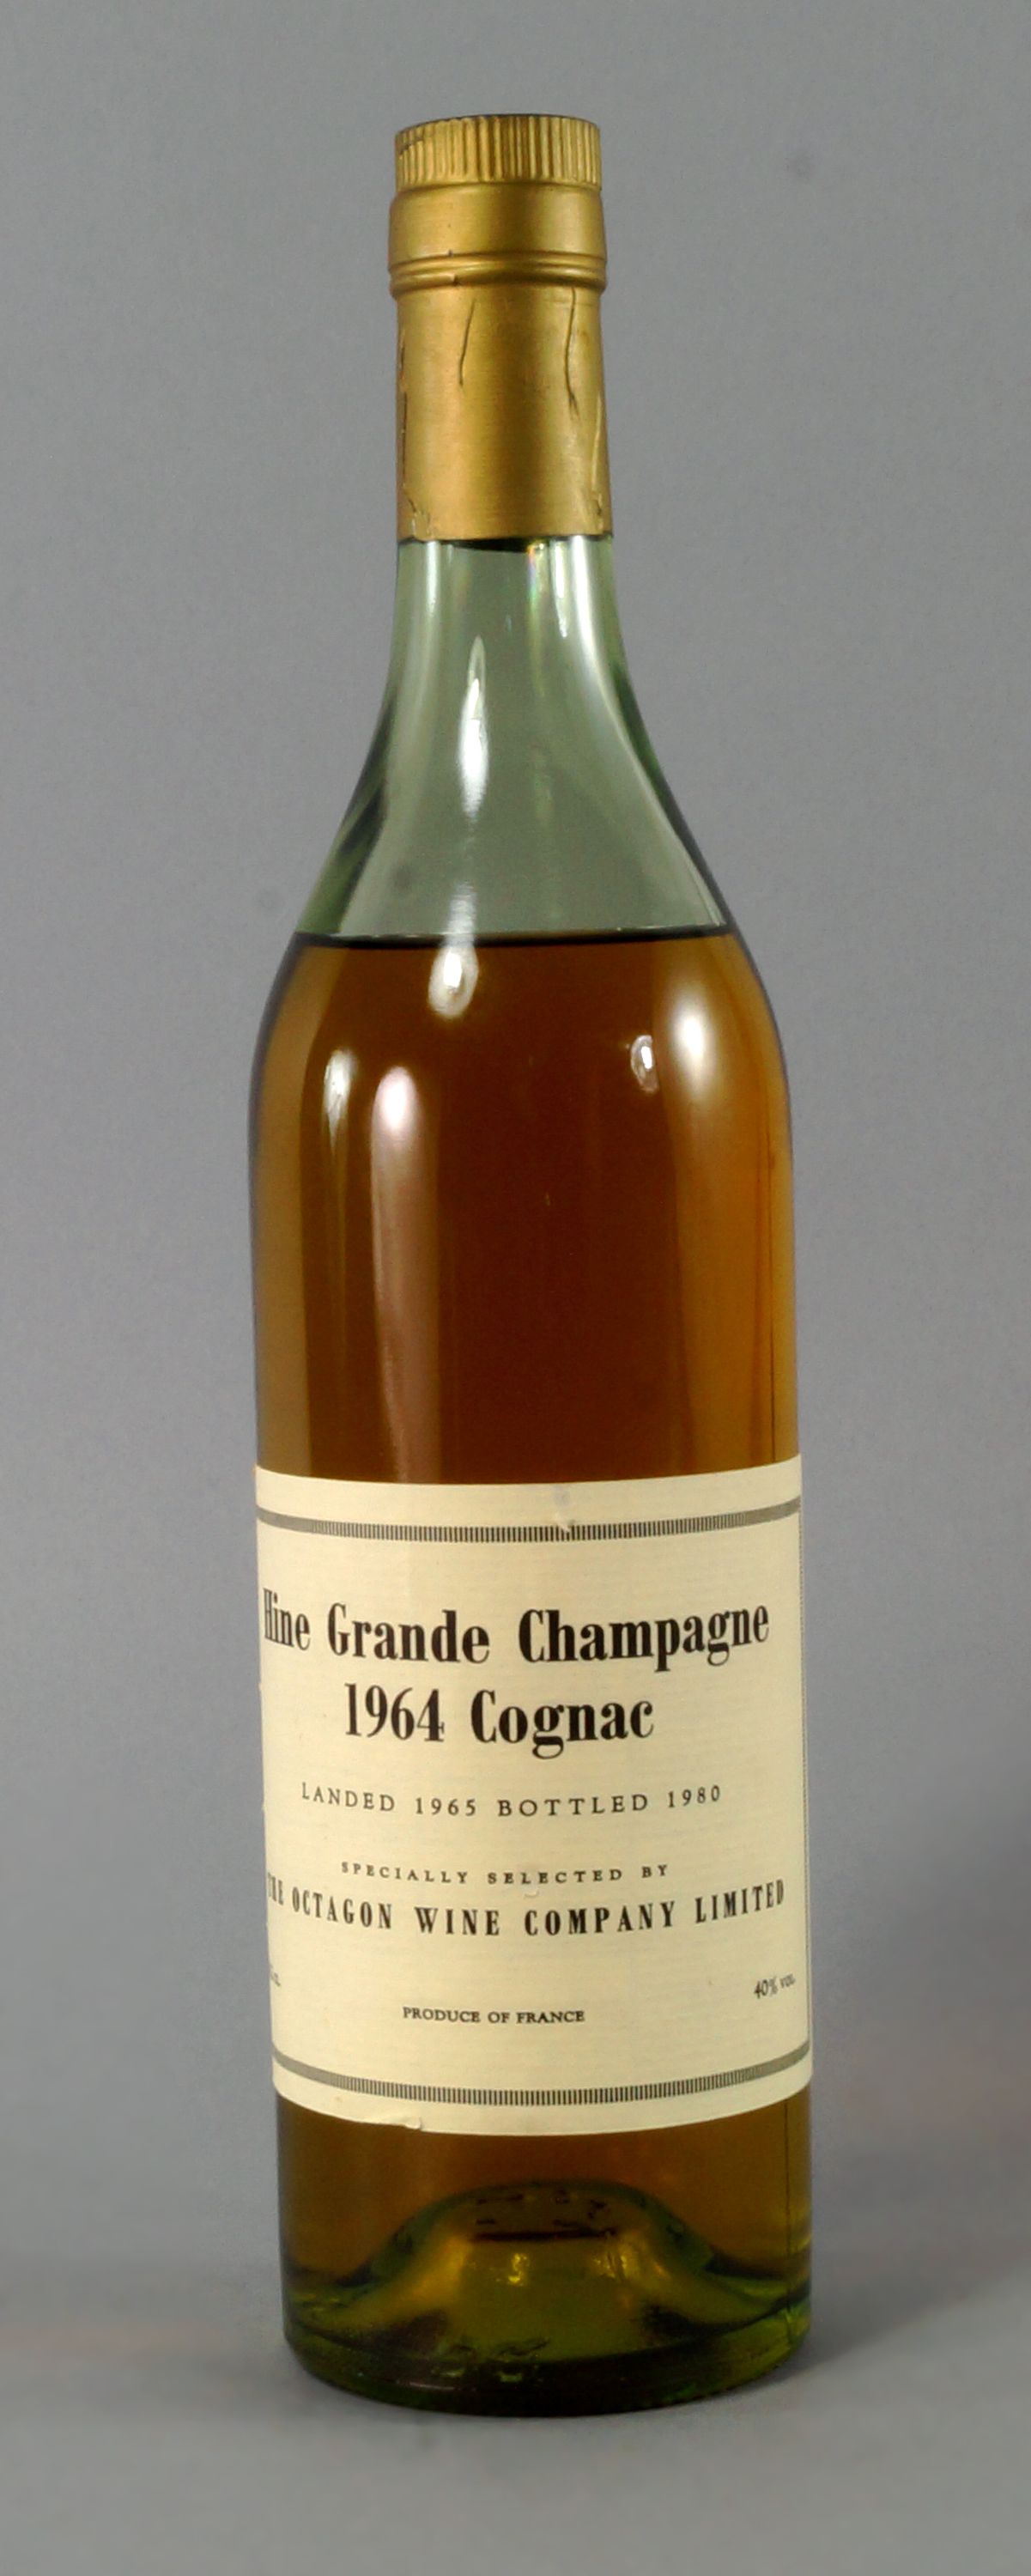 A Bottle of Hine Grand Champagne Cognac 1964, landed 1965, bottled 1980,